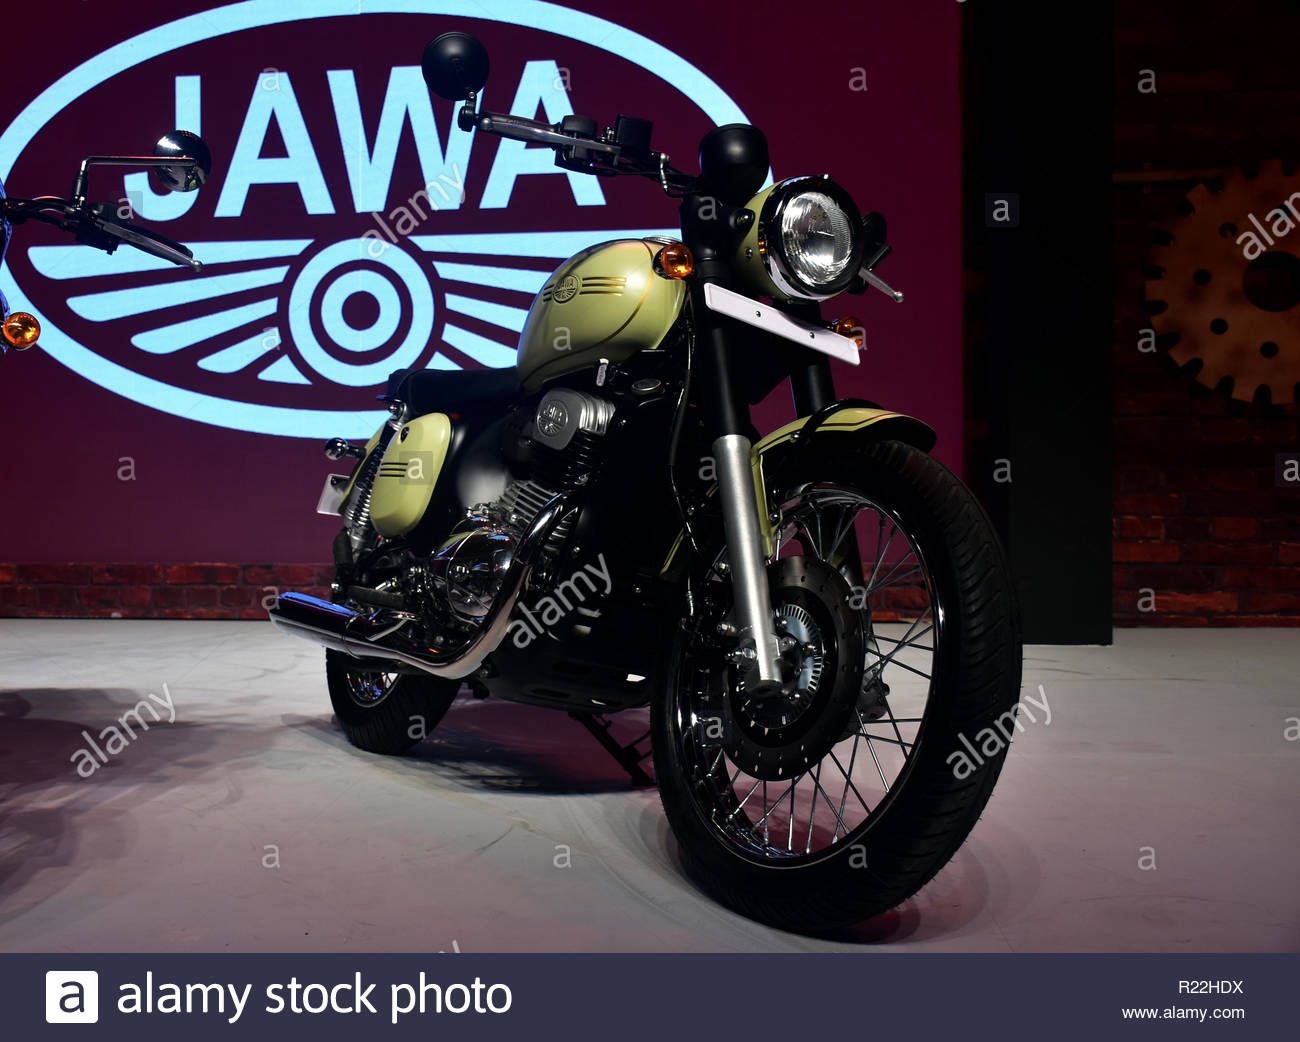 Jawa Bike Stock Photos Image